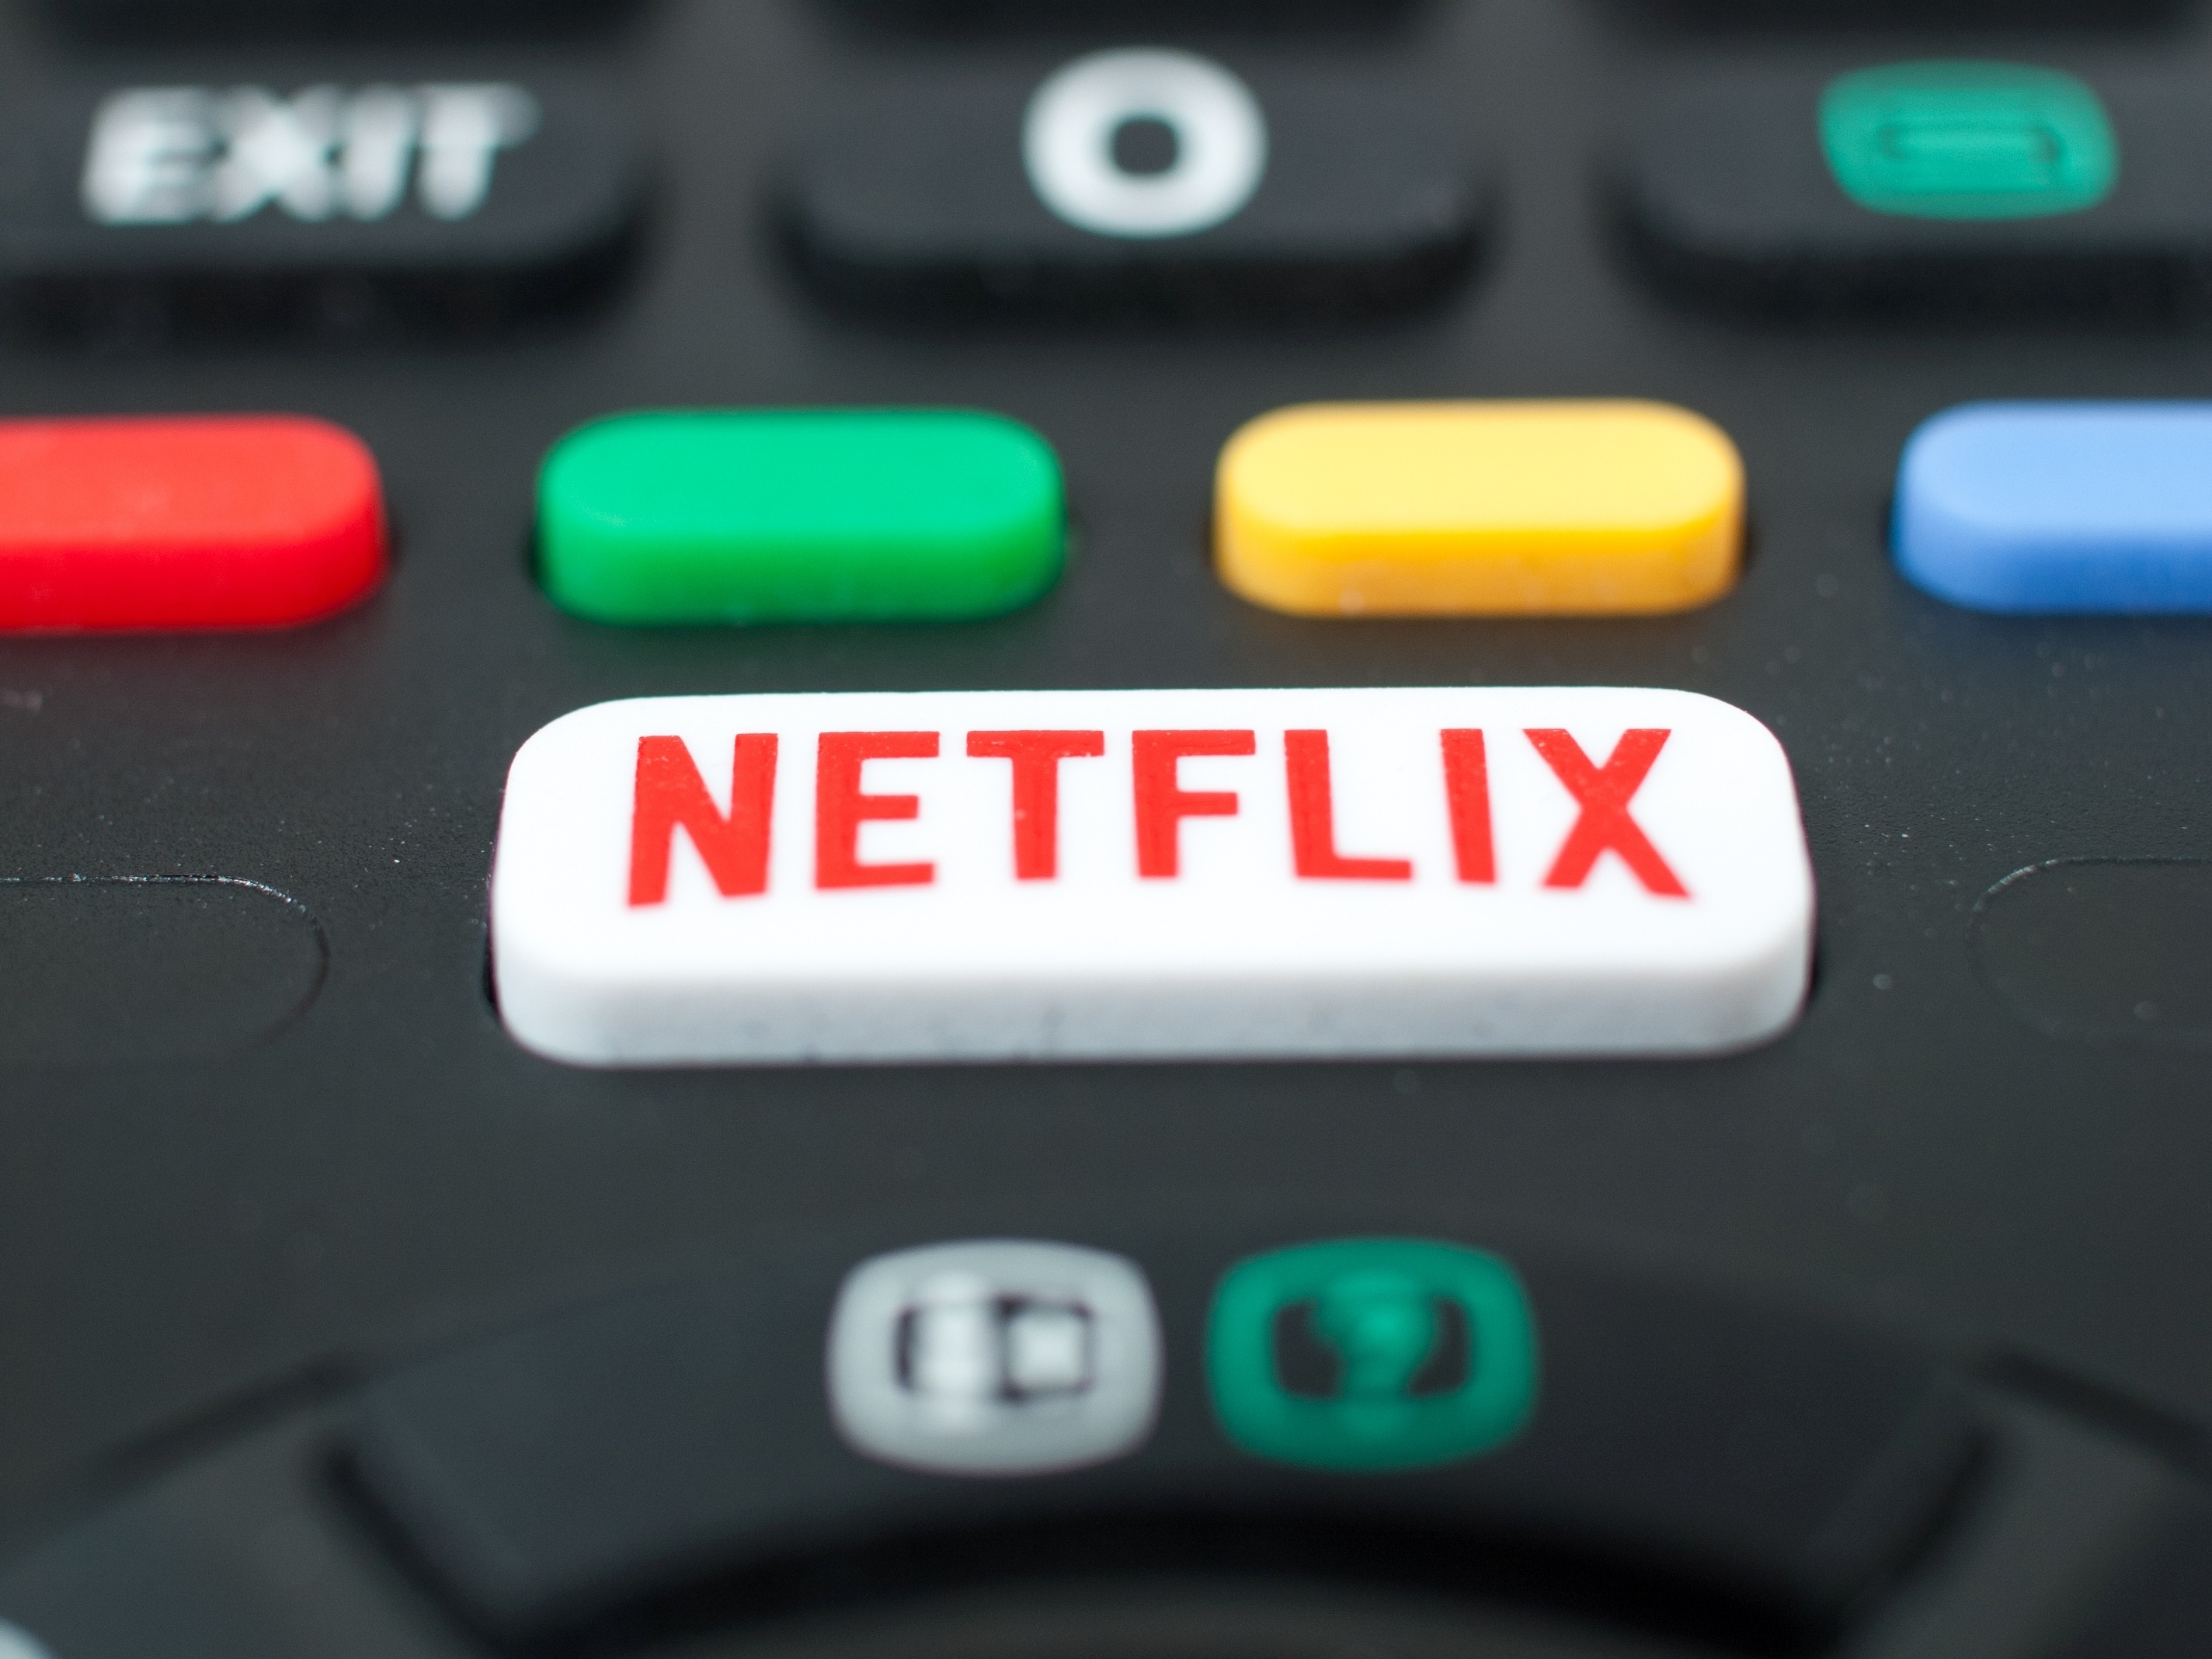 Netflix lança plano mais barato com anúncios no Brasil; veja como funciona  - Zoeira - Diário do Nordeste